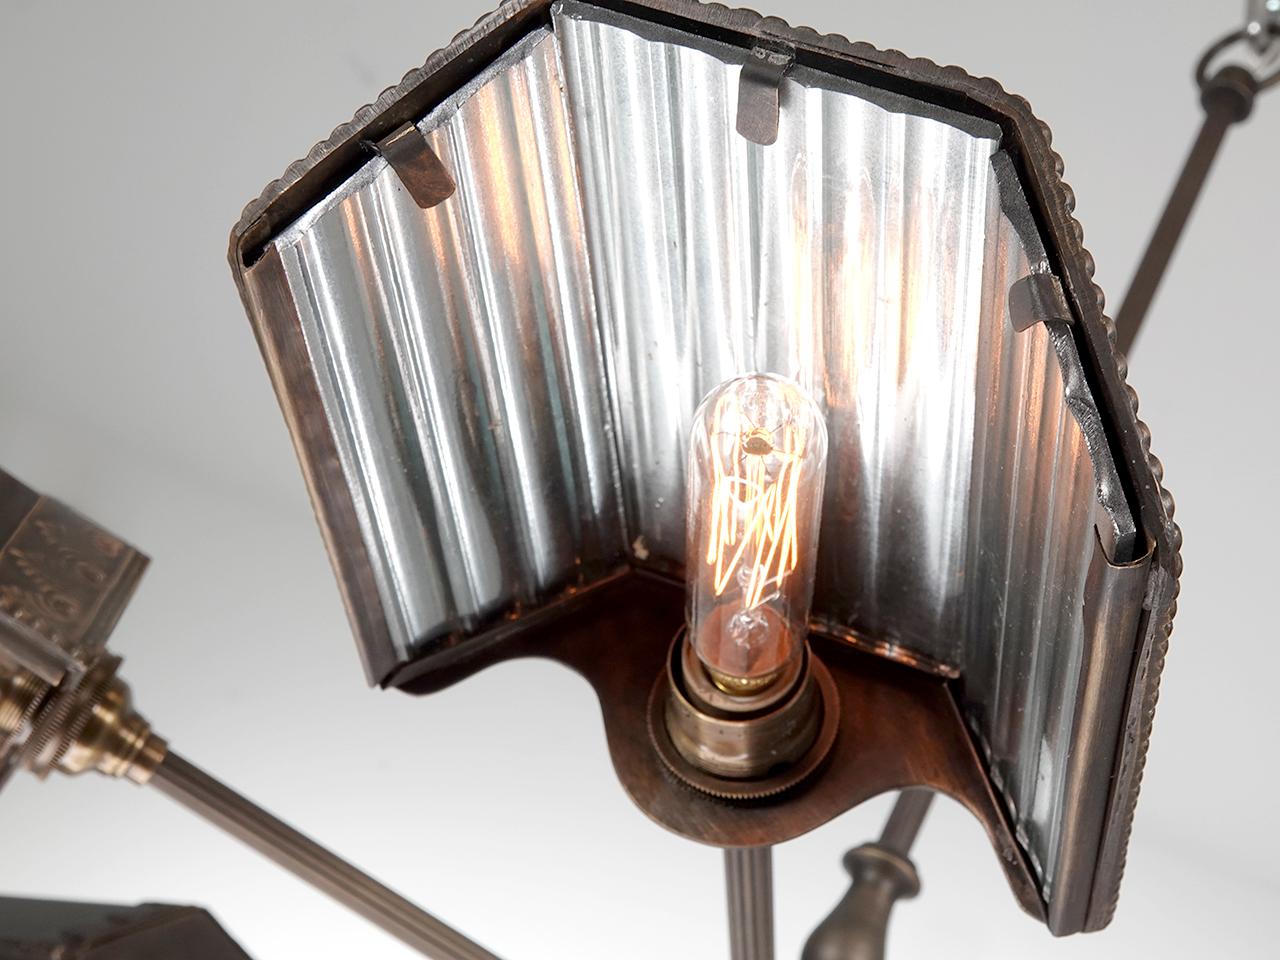 Wir haben uns von den frühesten Reflektorlampen der Firmen Frink und Wheeler inspirieren lassen. Vor über 100 Jahren waren diese kleinen verspiegelten Lampenschirme auf Vaudeville-Bühnen zu finden und wurden als Foot Lights bezeichnet. Jeder Schirm